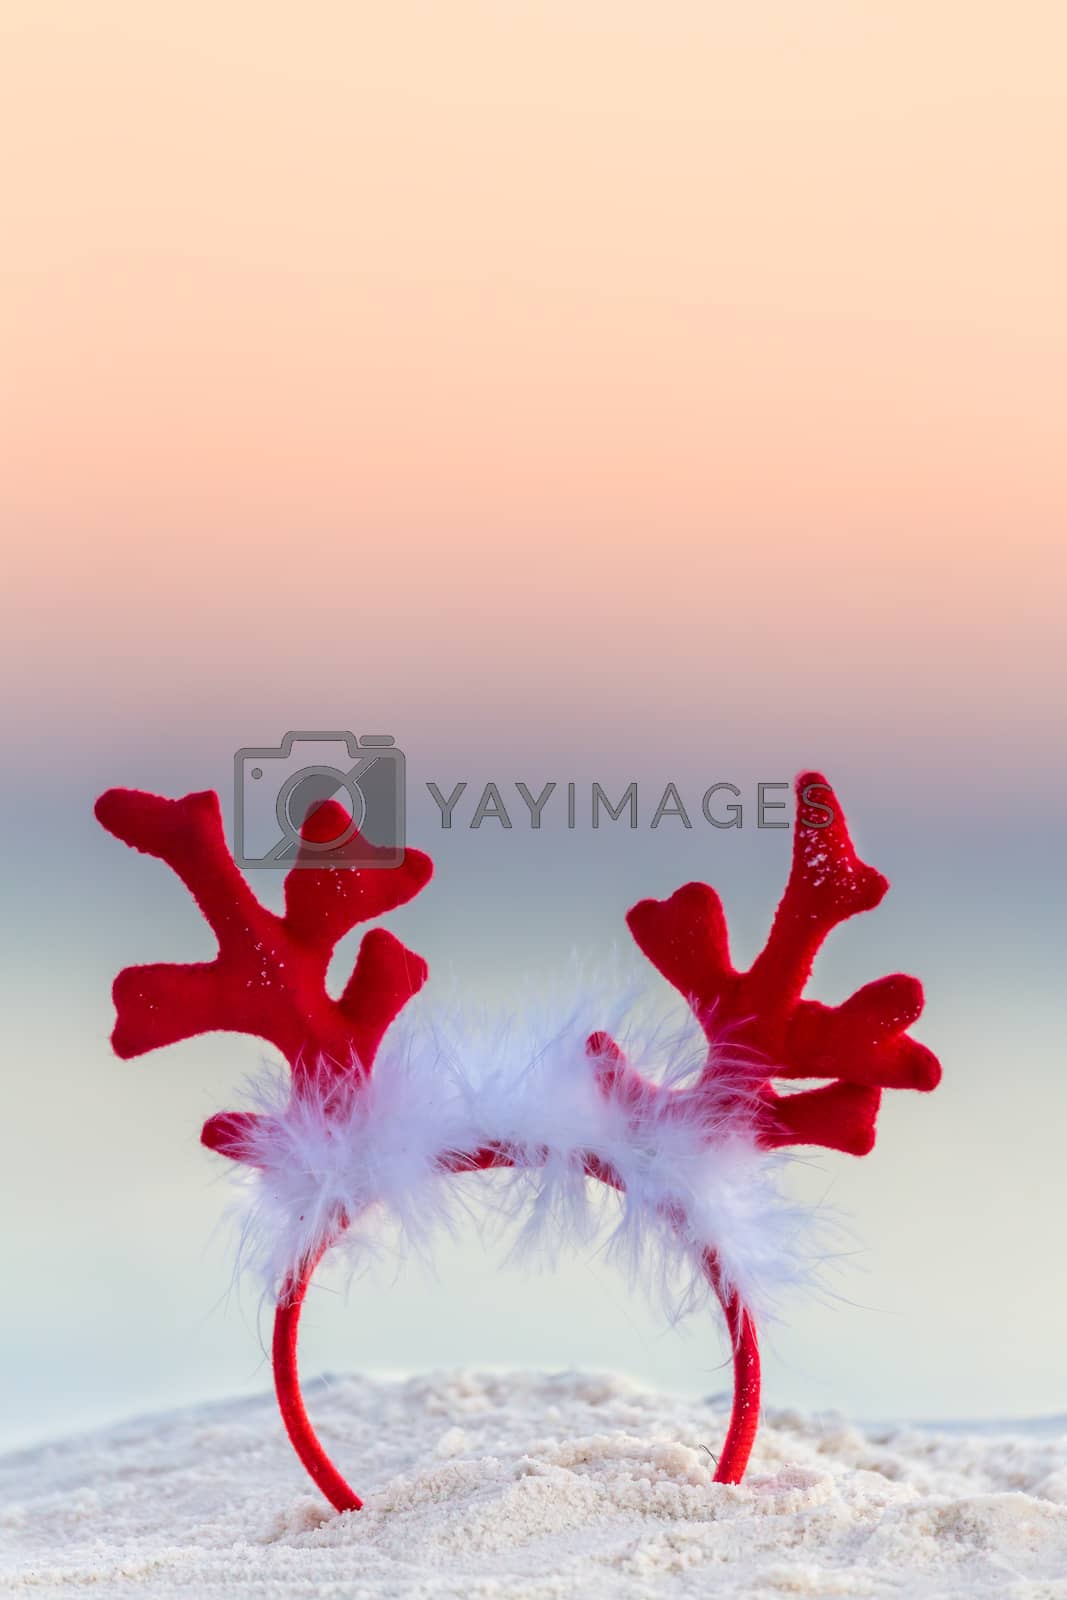 Royalty free image of Christmas reindeer antlers on an Australian beach by lovleah